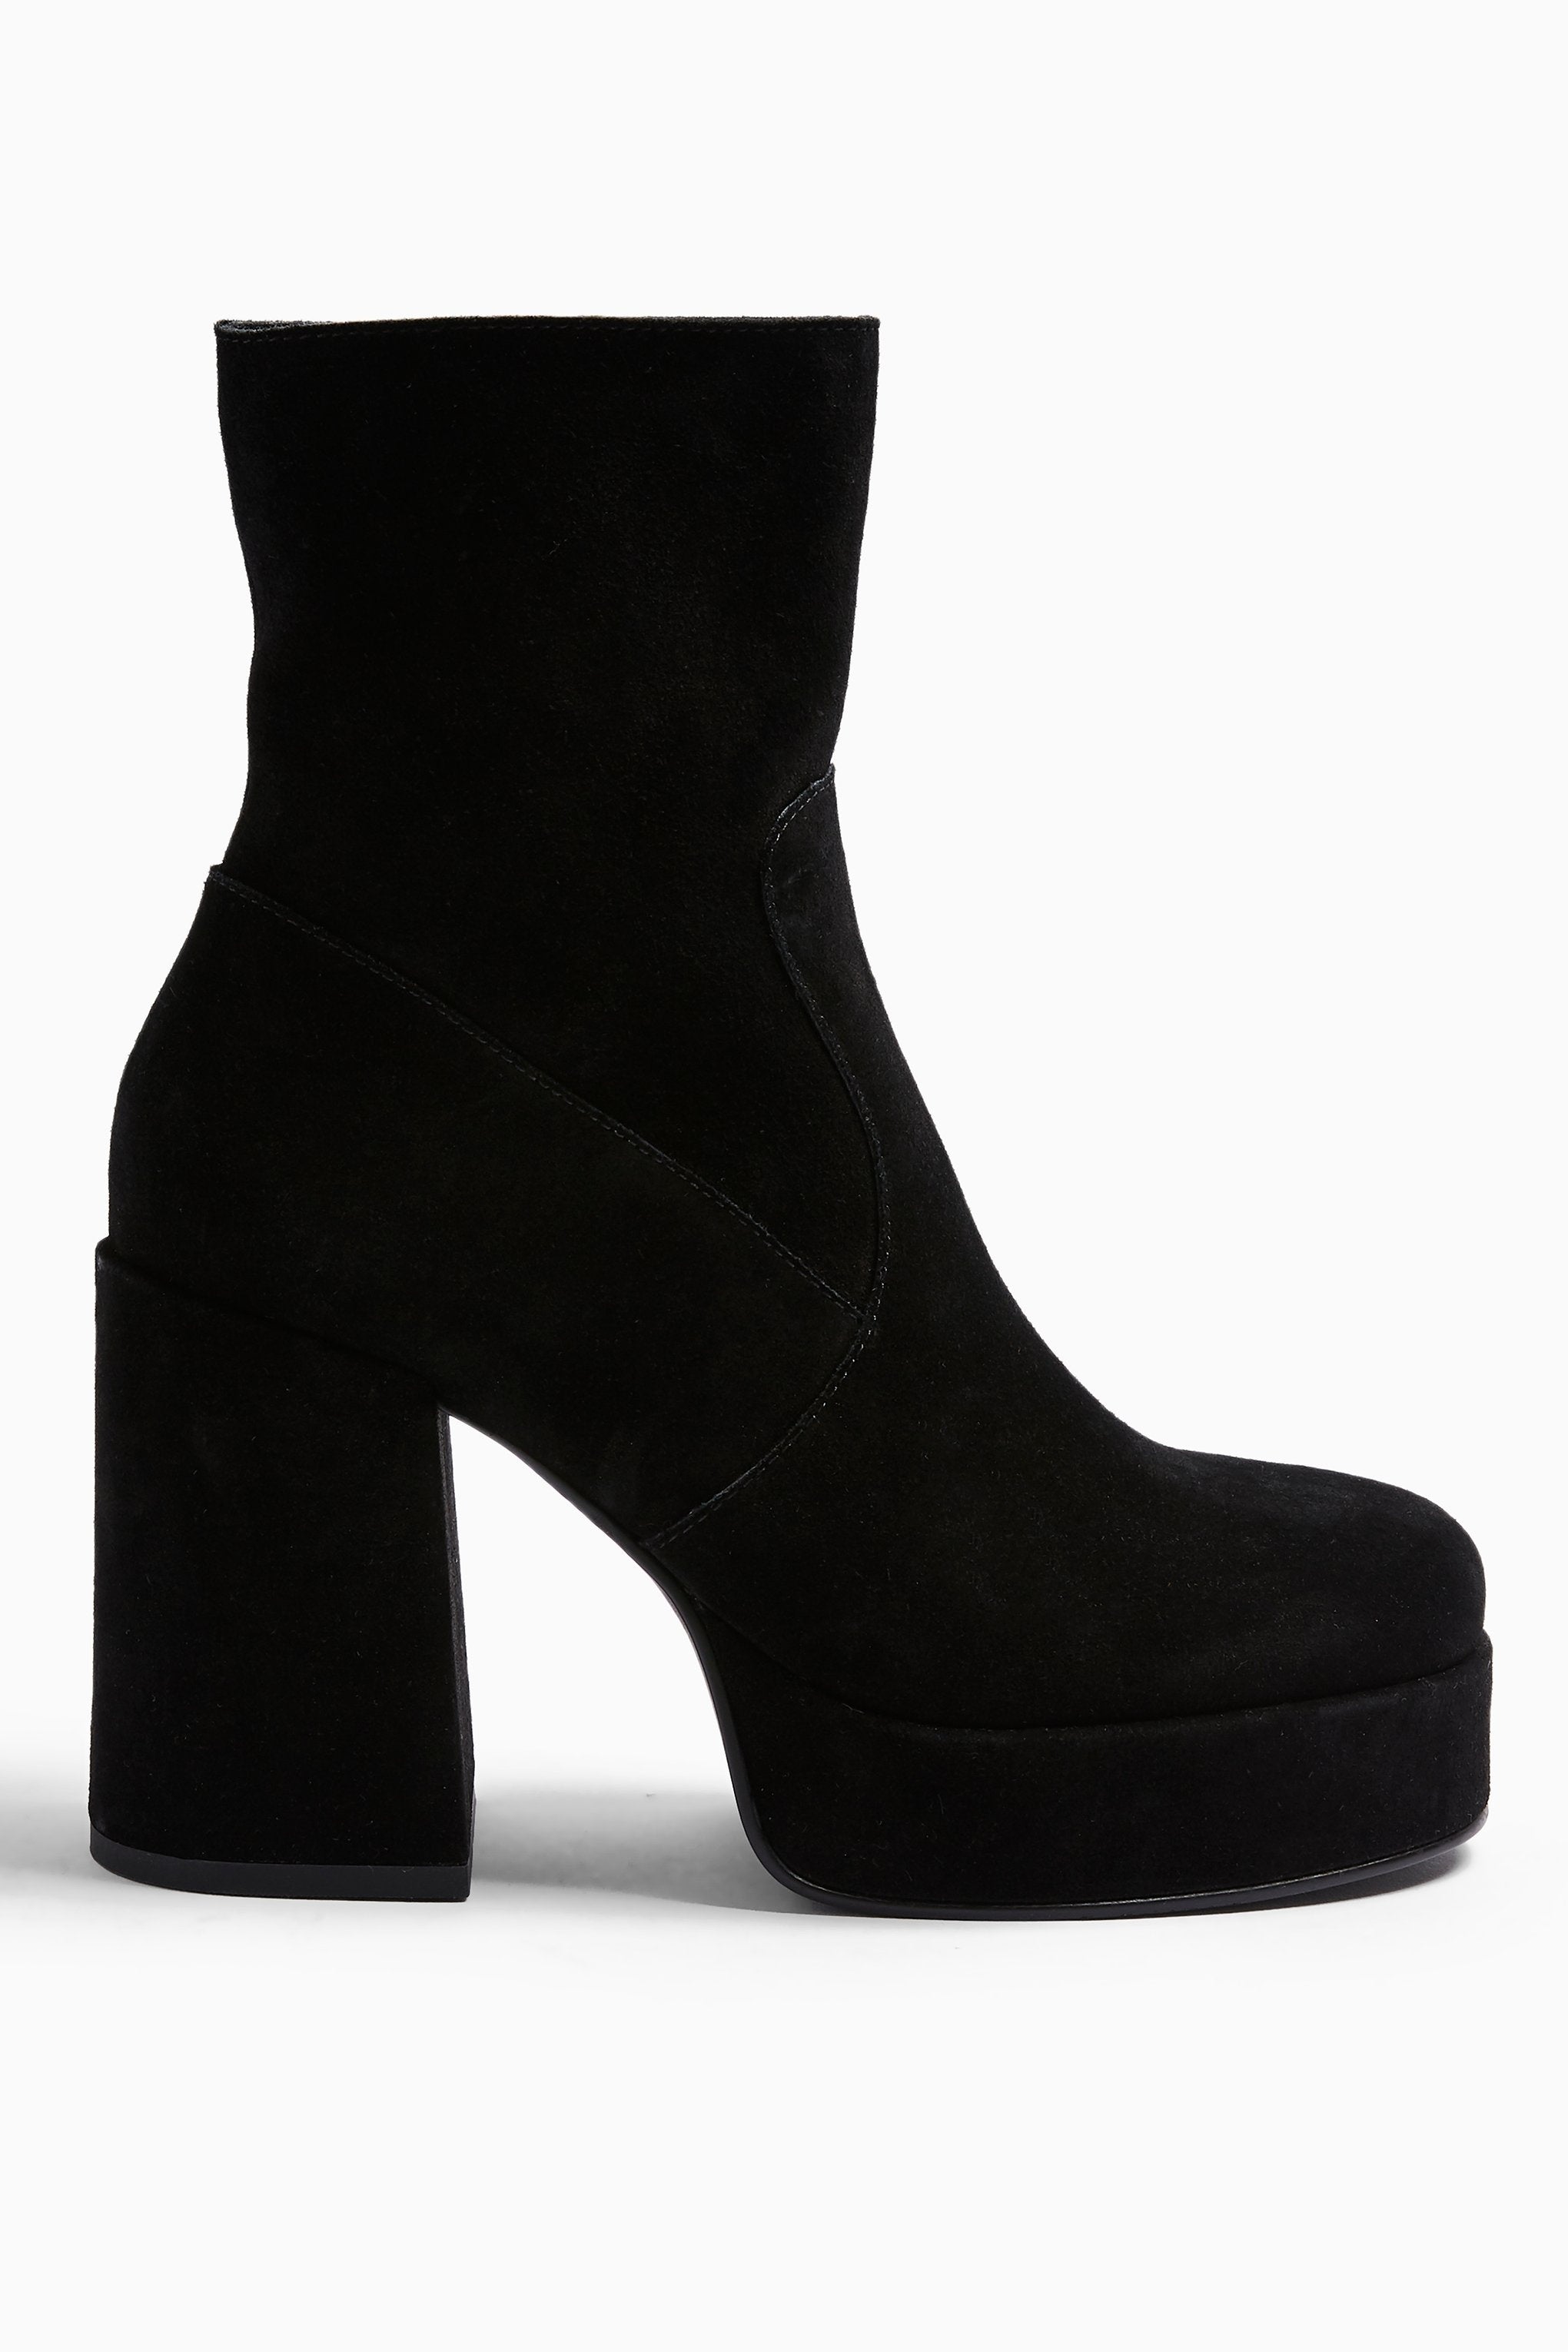 black leather boots platform